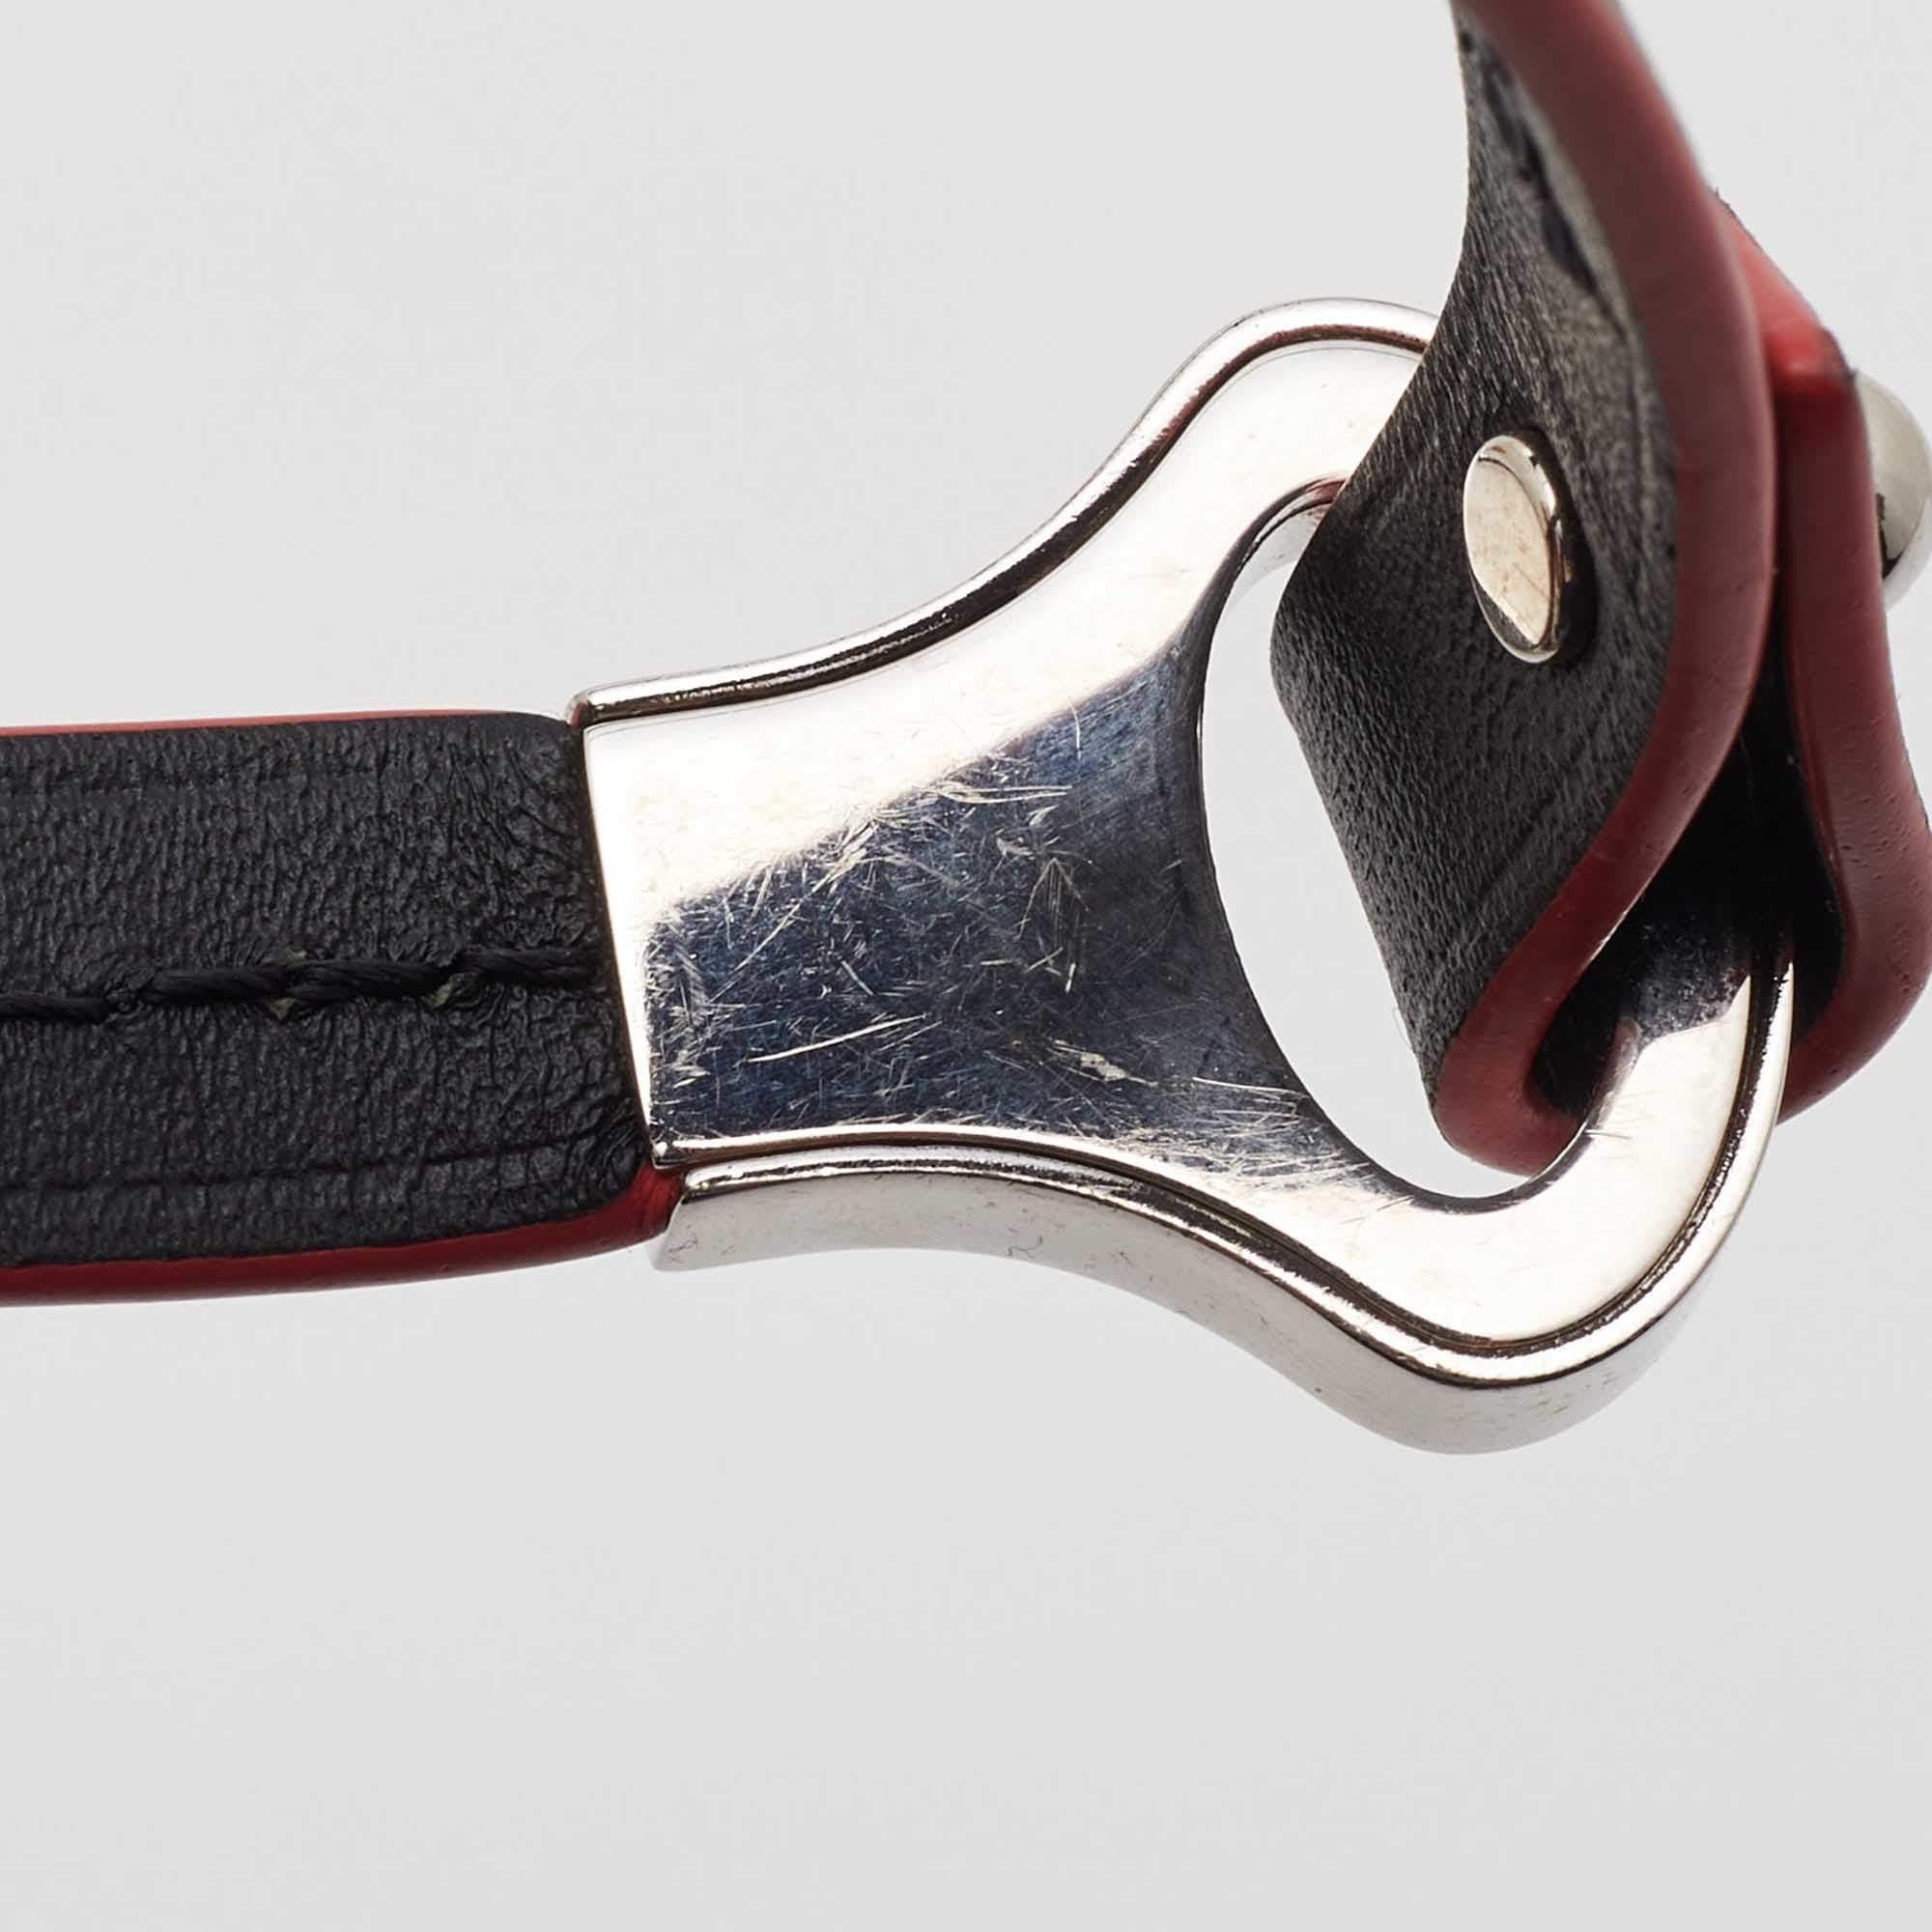 Ce bracelet Archive de la maison Louis Vuitton vous permettra de redéfinir votre répertoire d'accessoires. Il est soigneusement conçu en cuir noir et présente des détails en métal argenté. Ce bracelet peut être associé à votre montre-bracelet.

